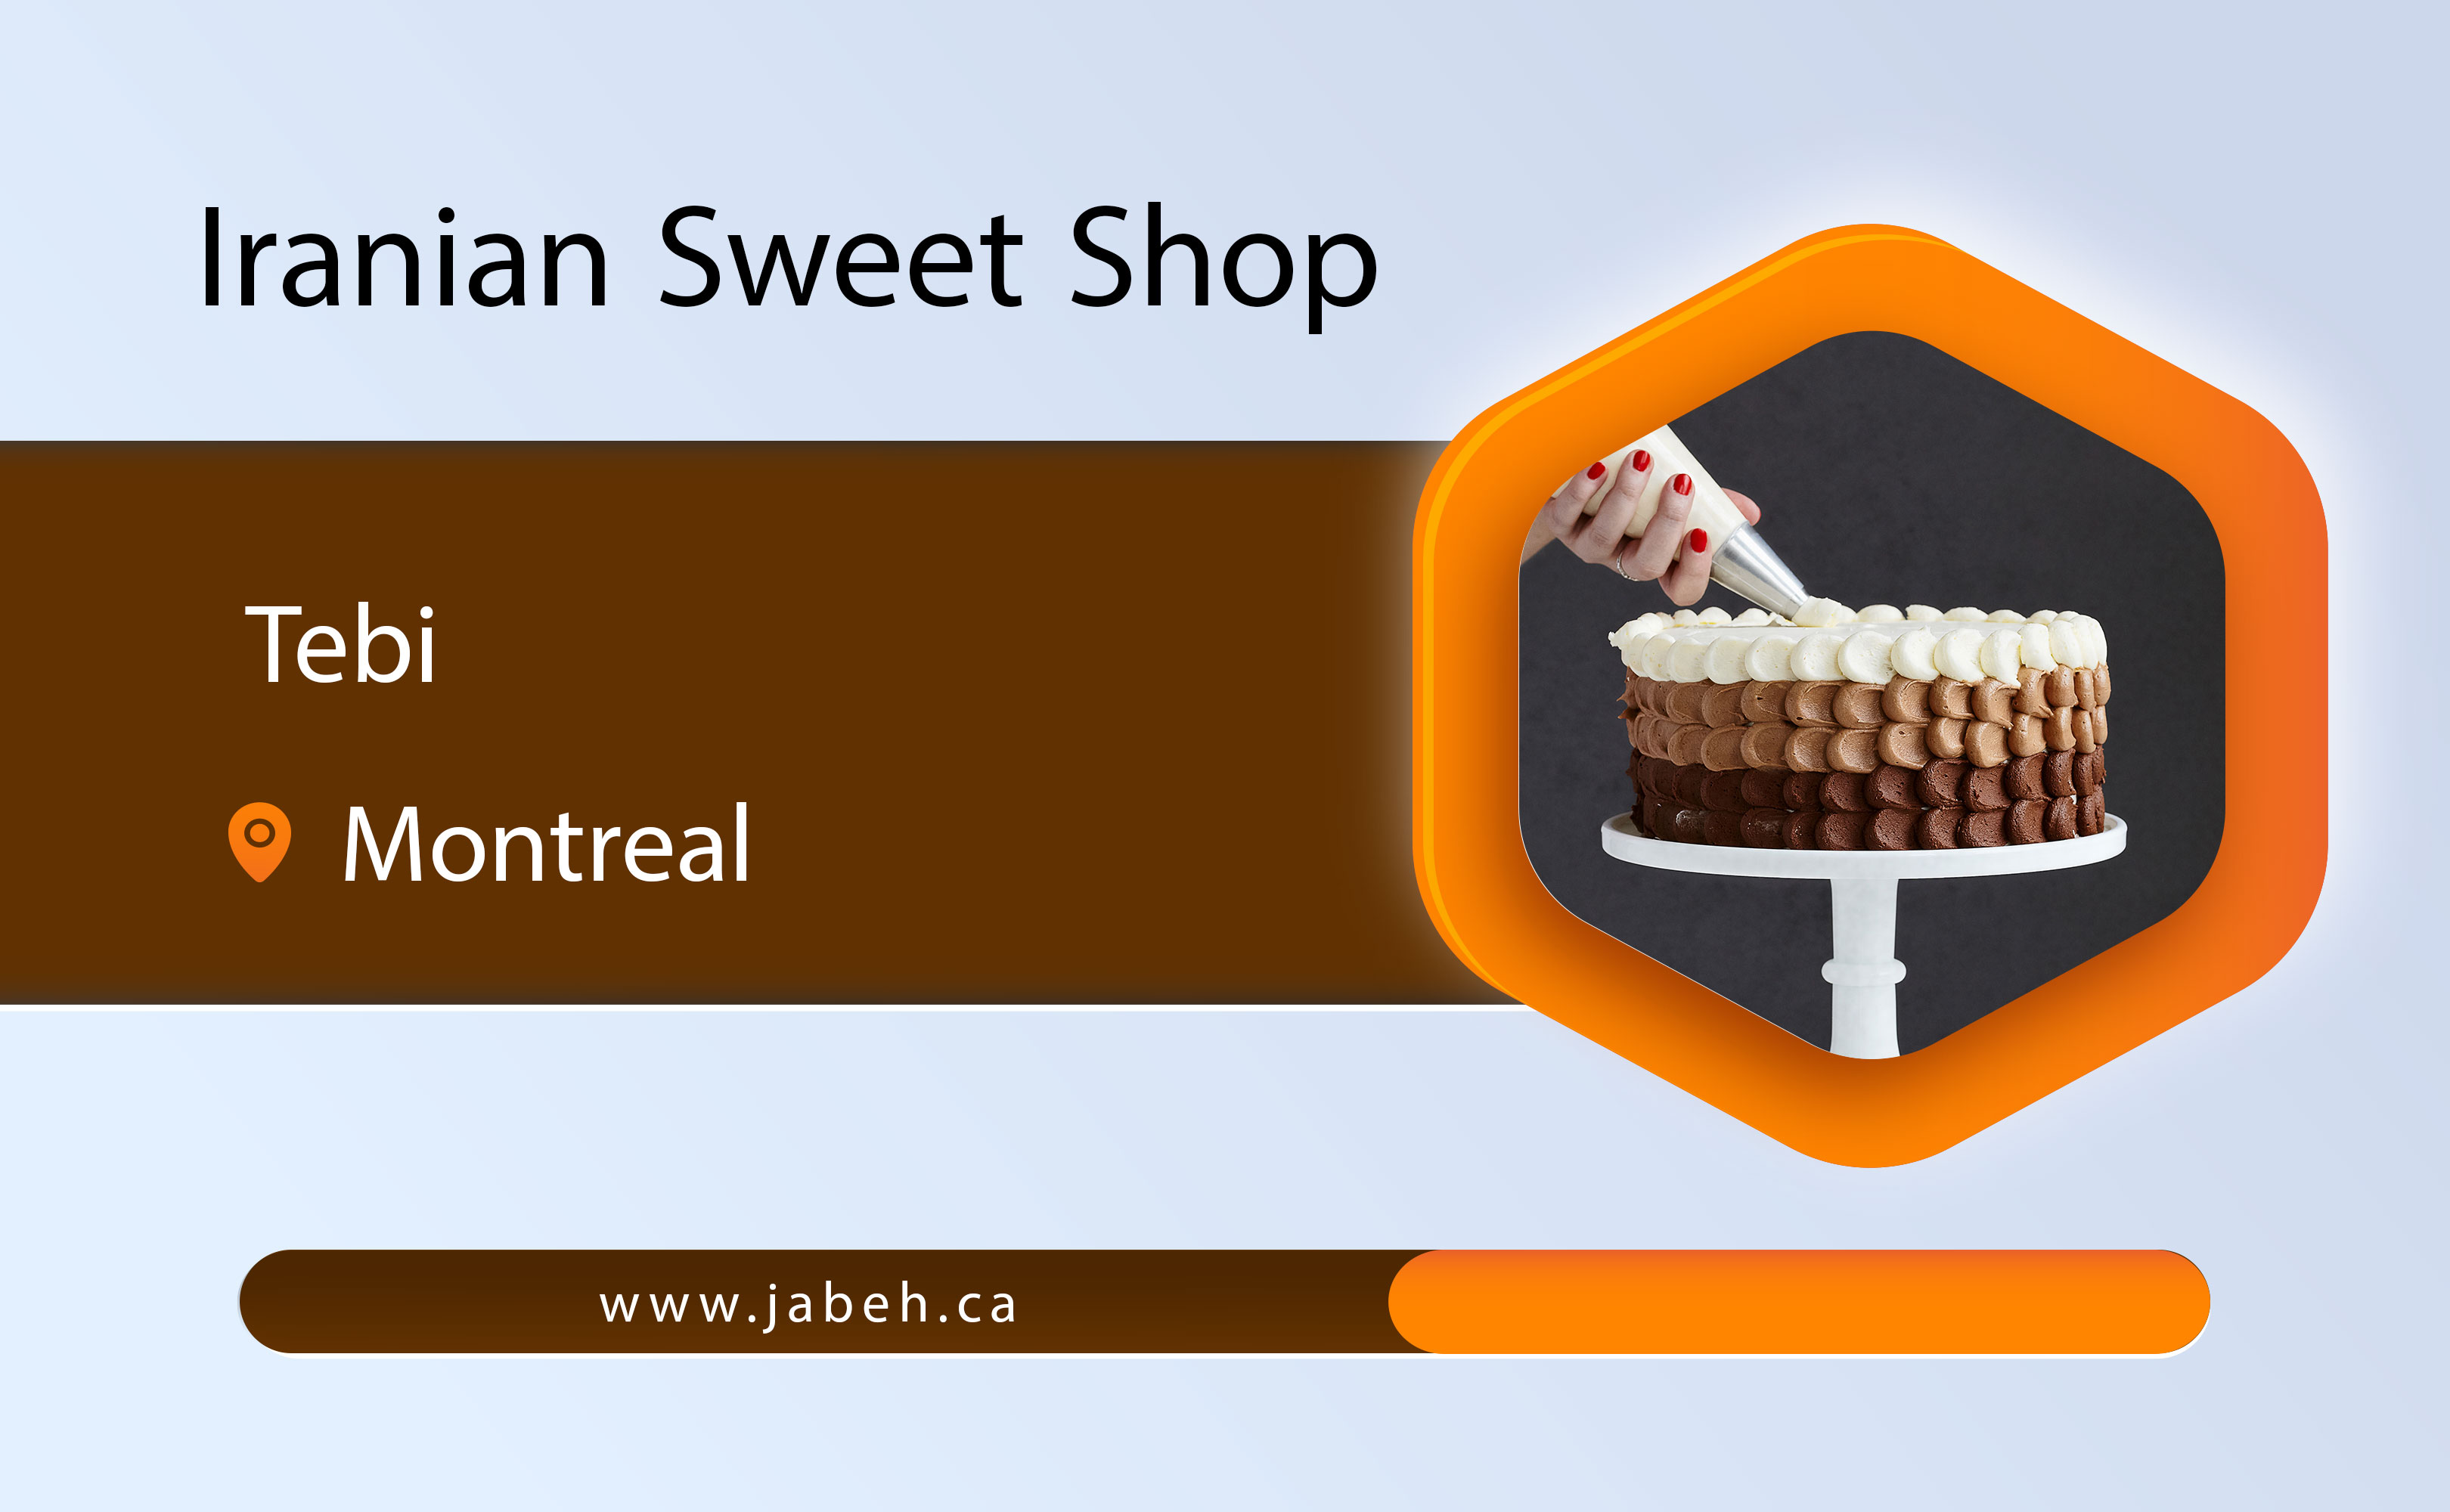 Tebi Iranian sweet shop in Montreal